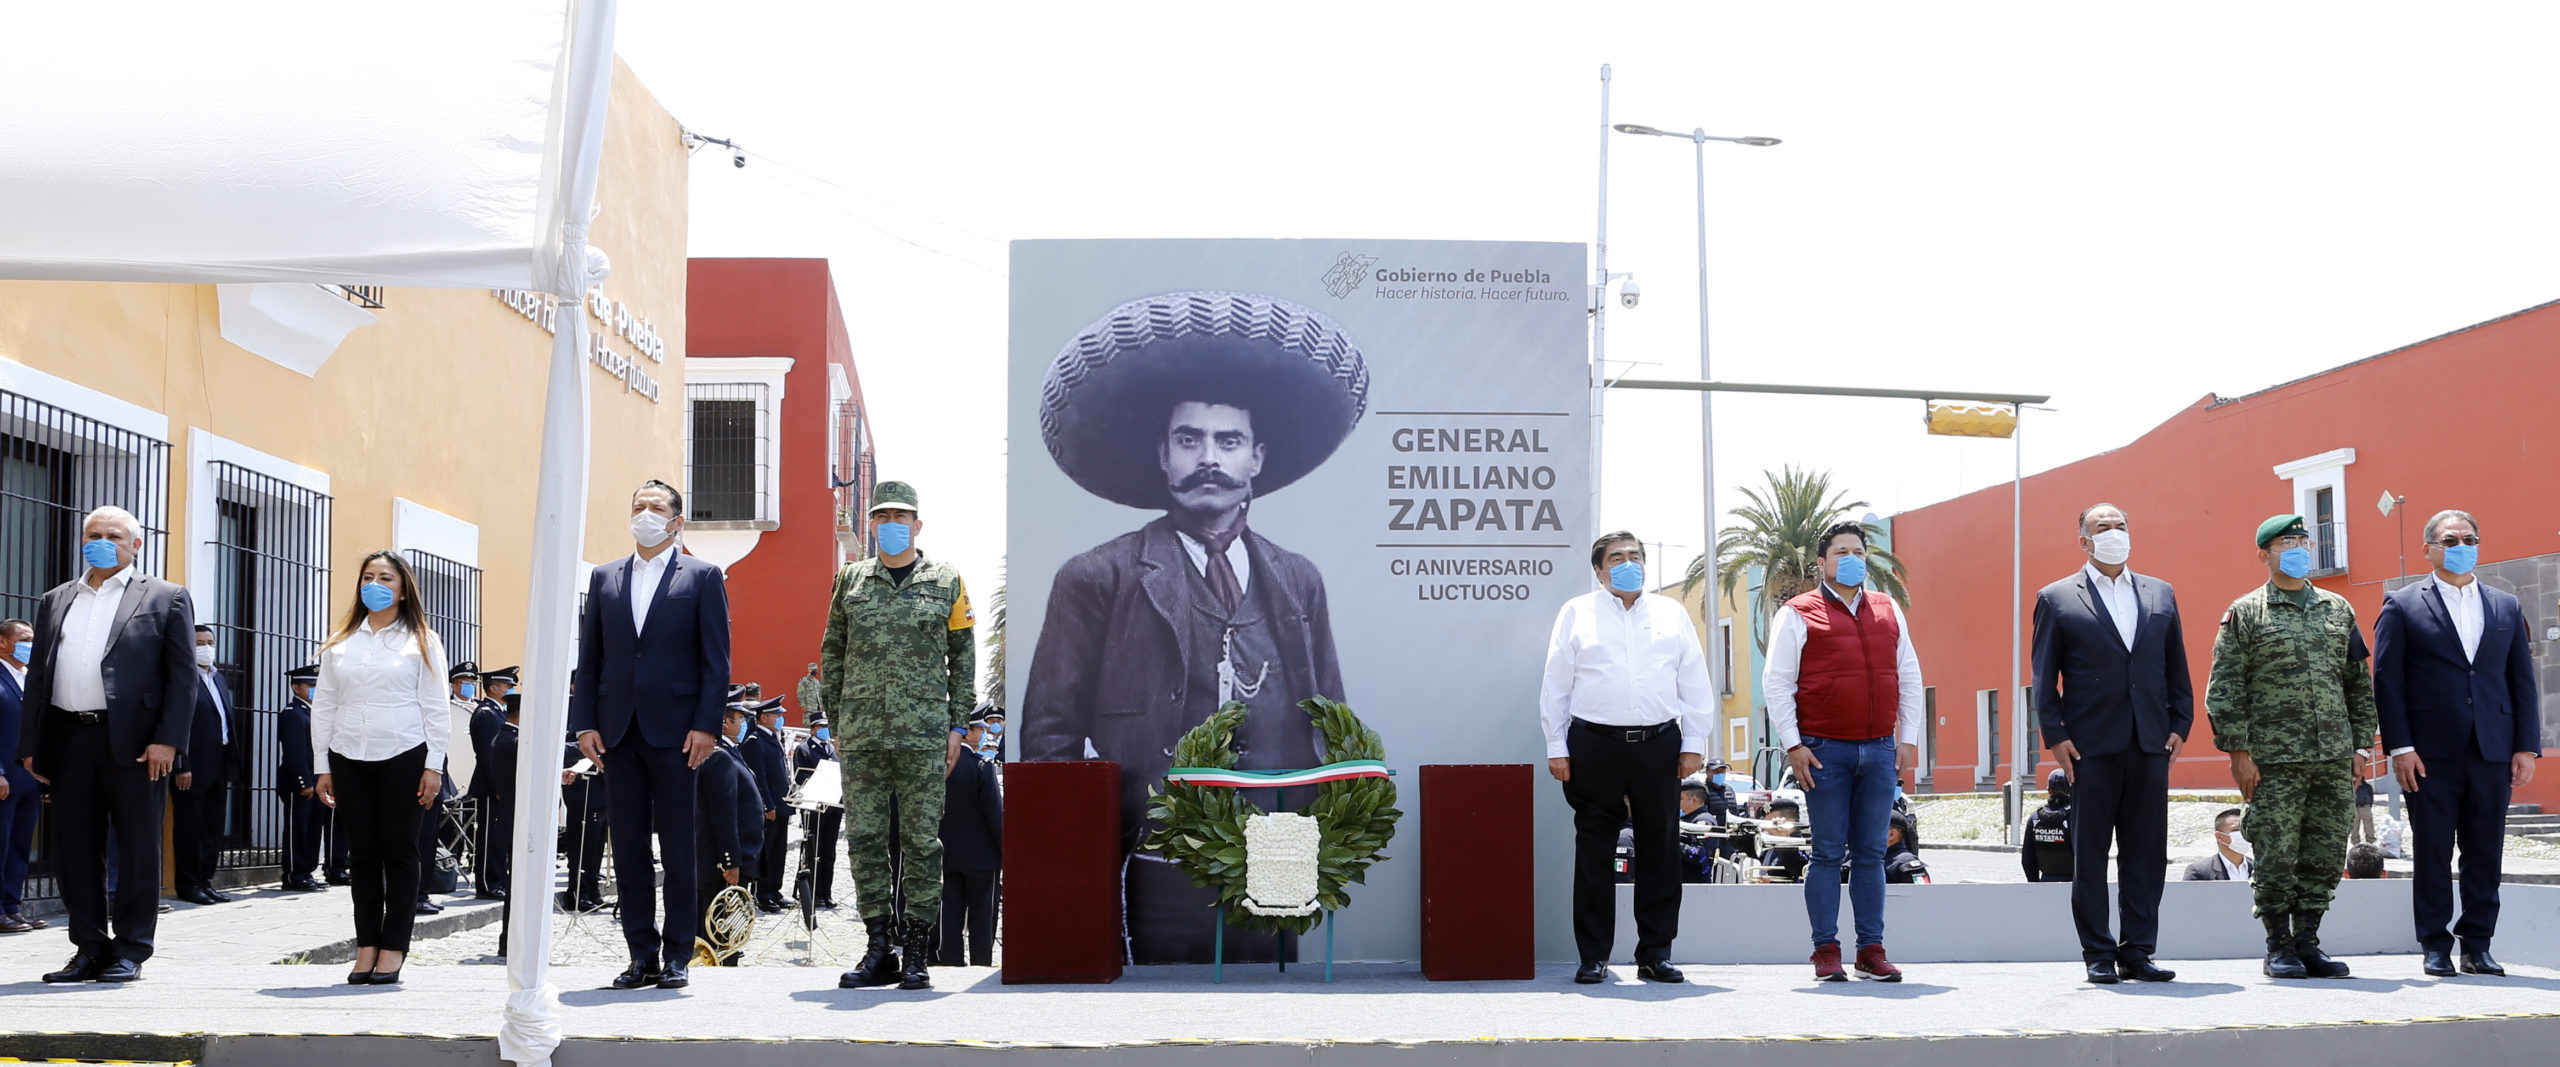 Gobierno del estado realiza ceremonia conmemorativa del 101 aniversario de Emiliano Zapata